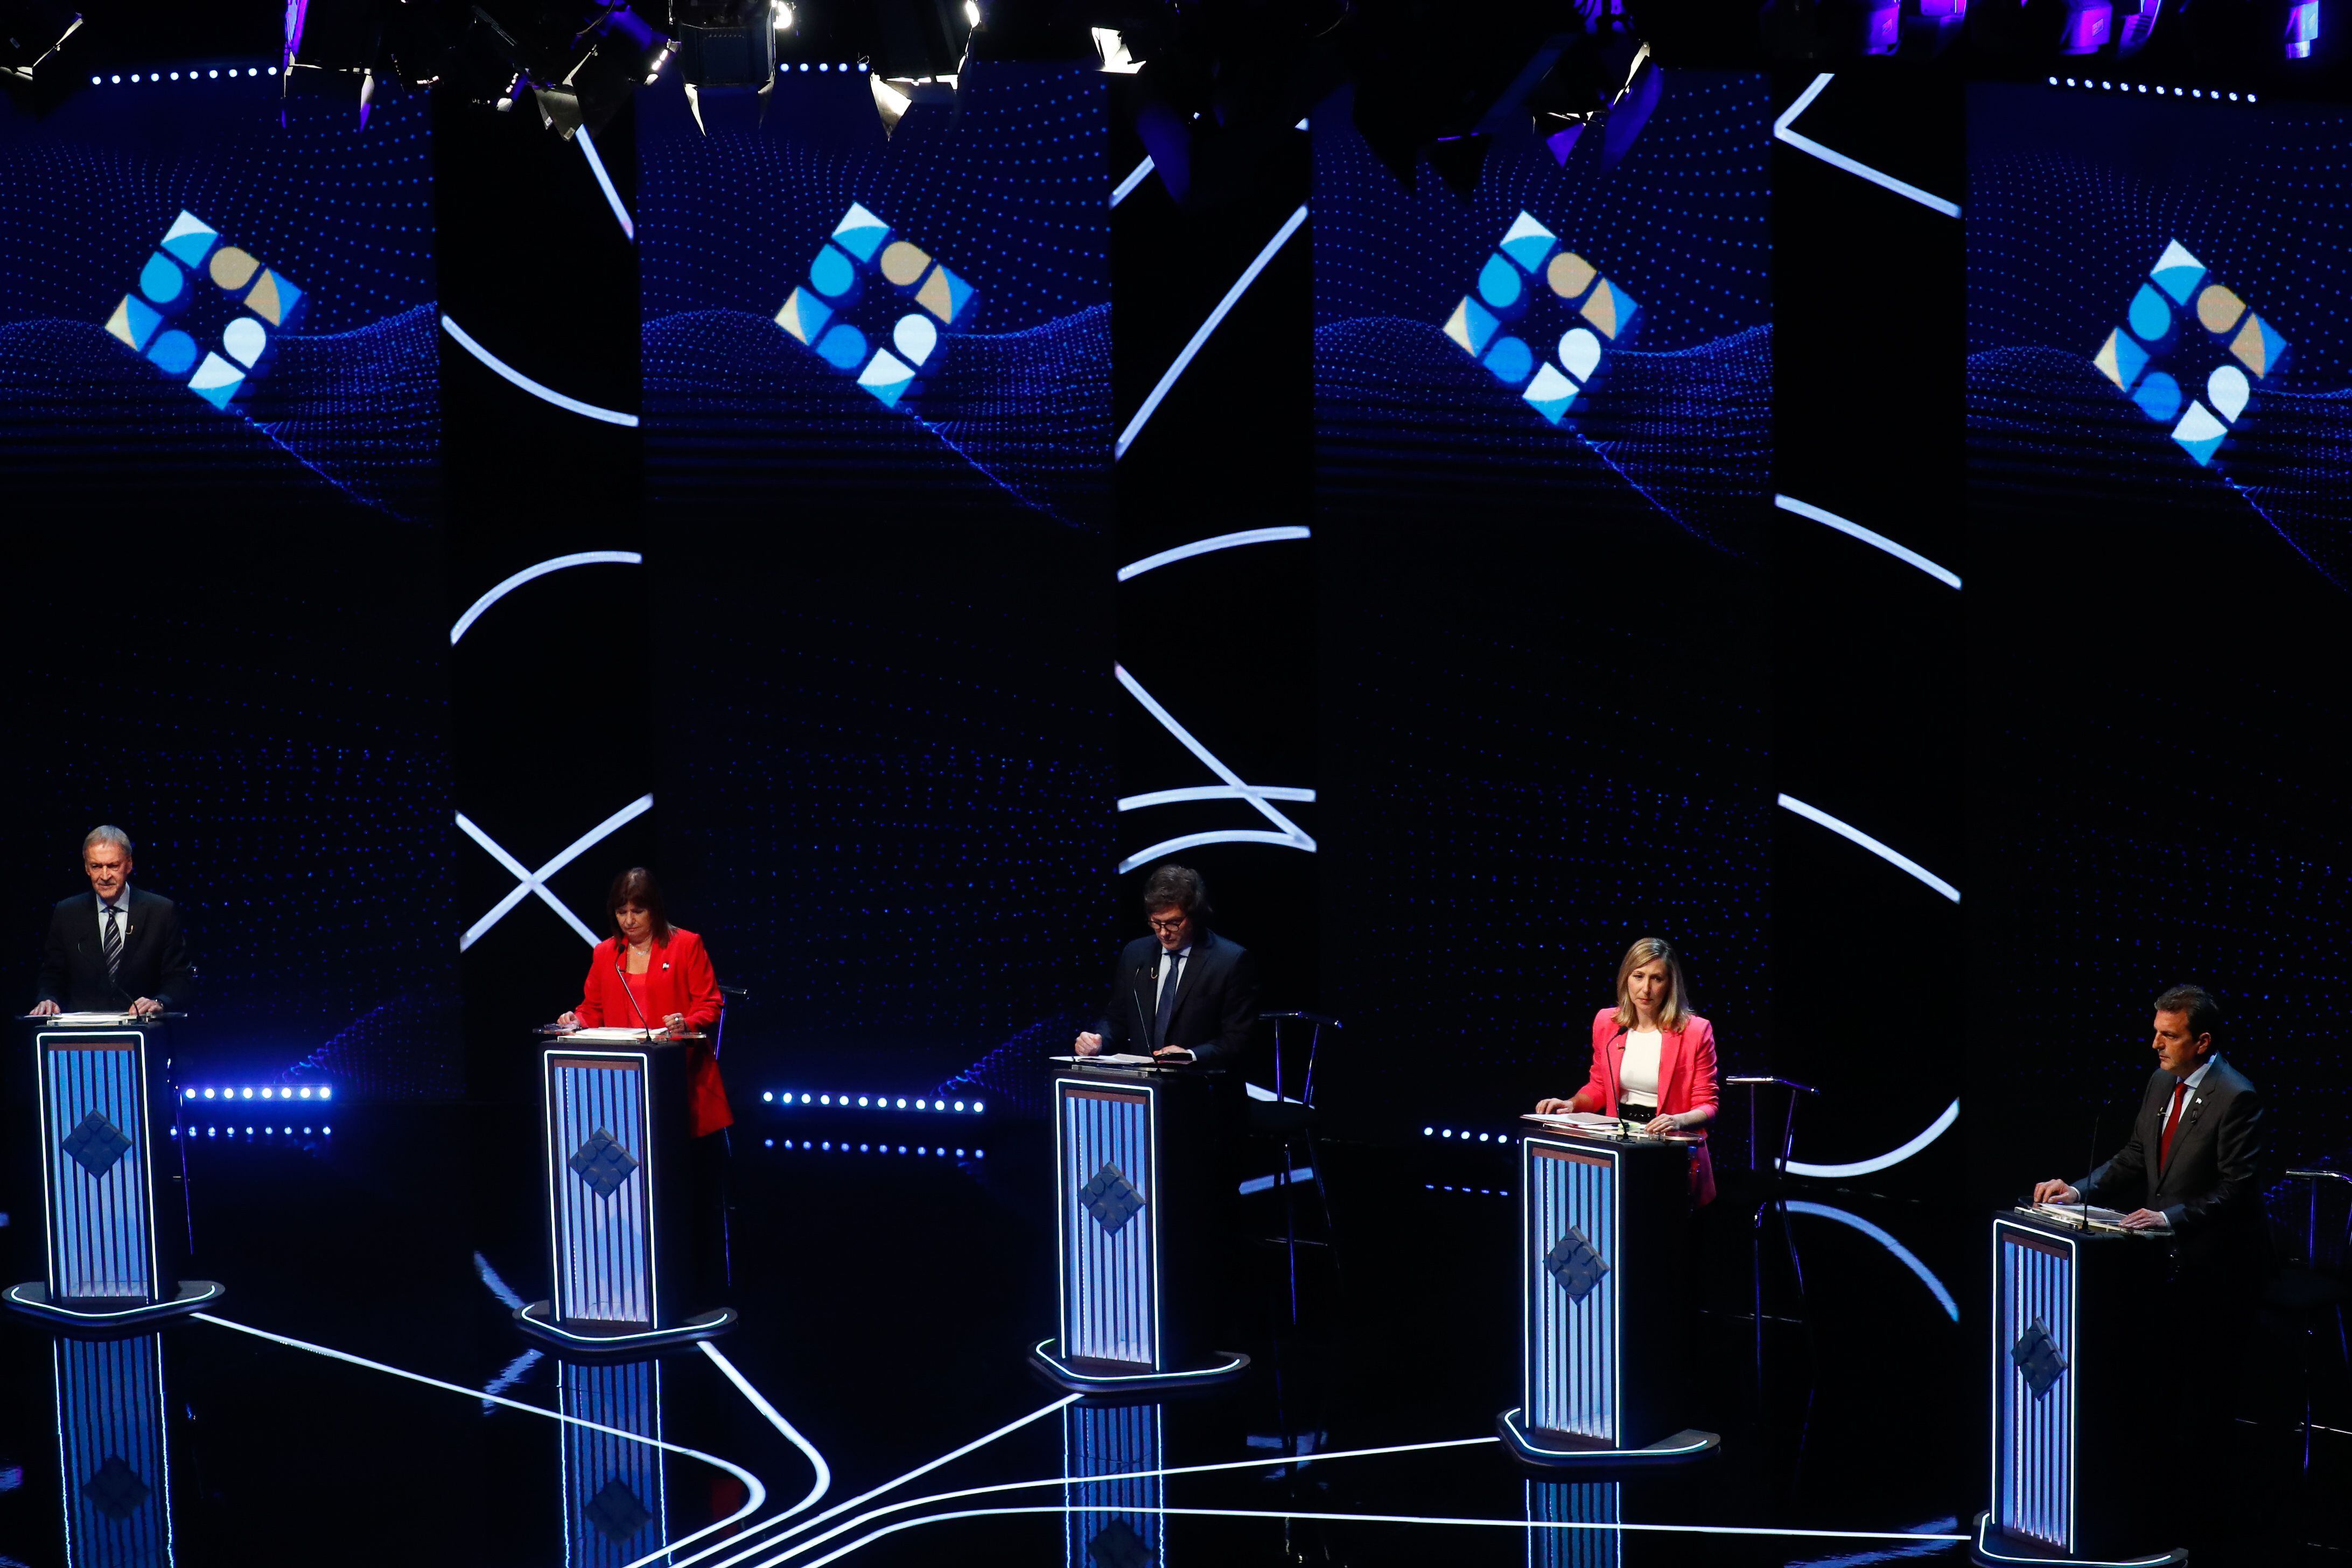 Los cinco candidatos a la Presidencia de Argentina participaron en un segundo debate electoral en el que hablaron entre otros asuntos sobre seguridad, trabajo y vivienda(EFE/ Agustín Marcarian POOL)